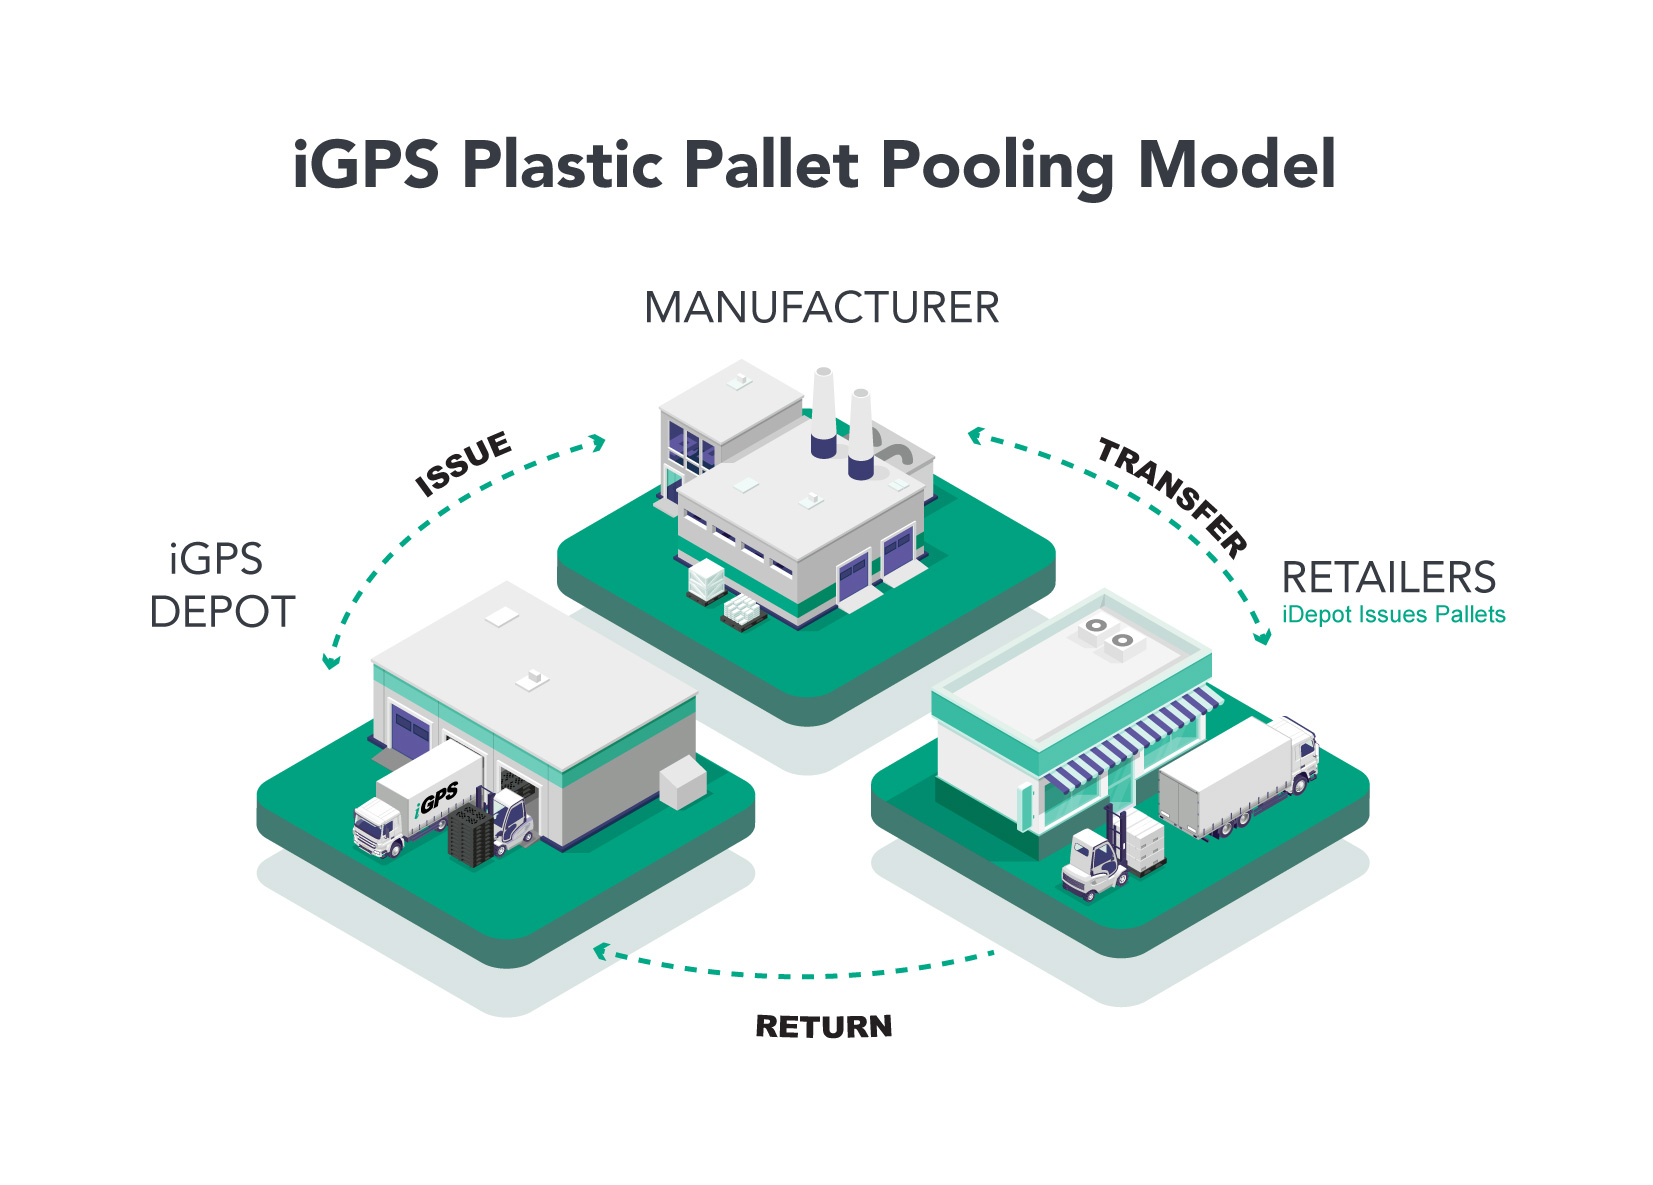 IGPS Plastic Pallet Pooling Model